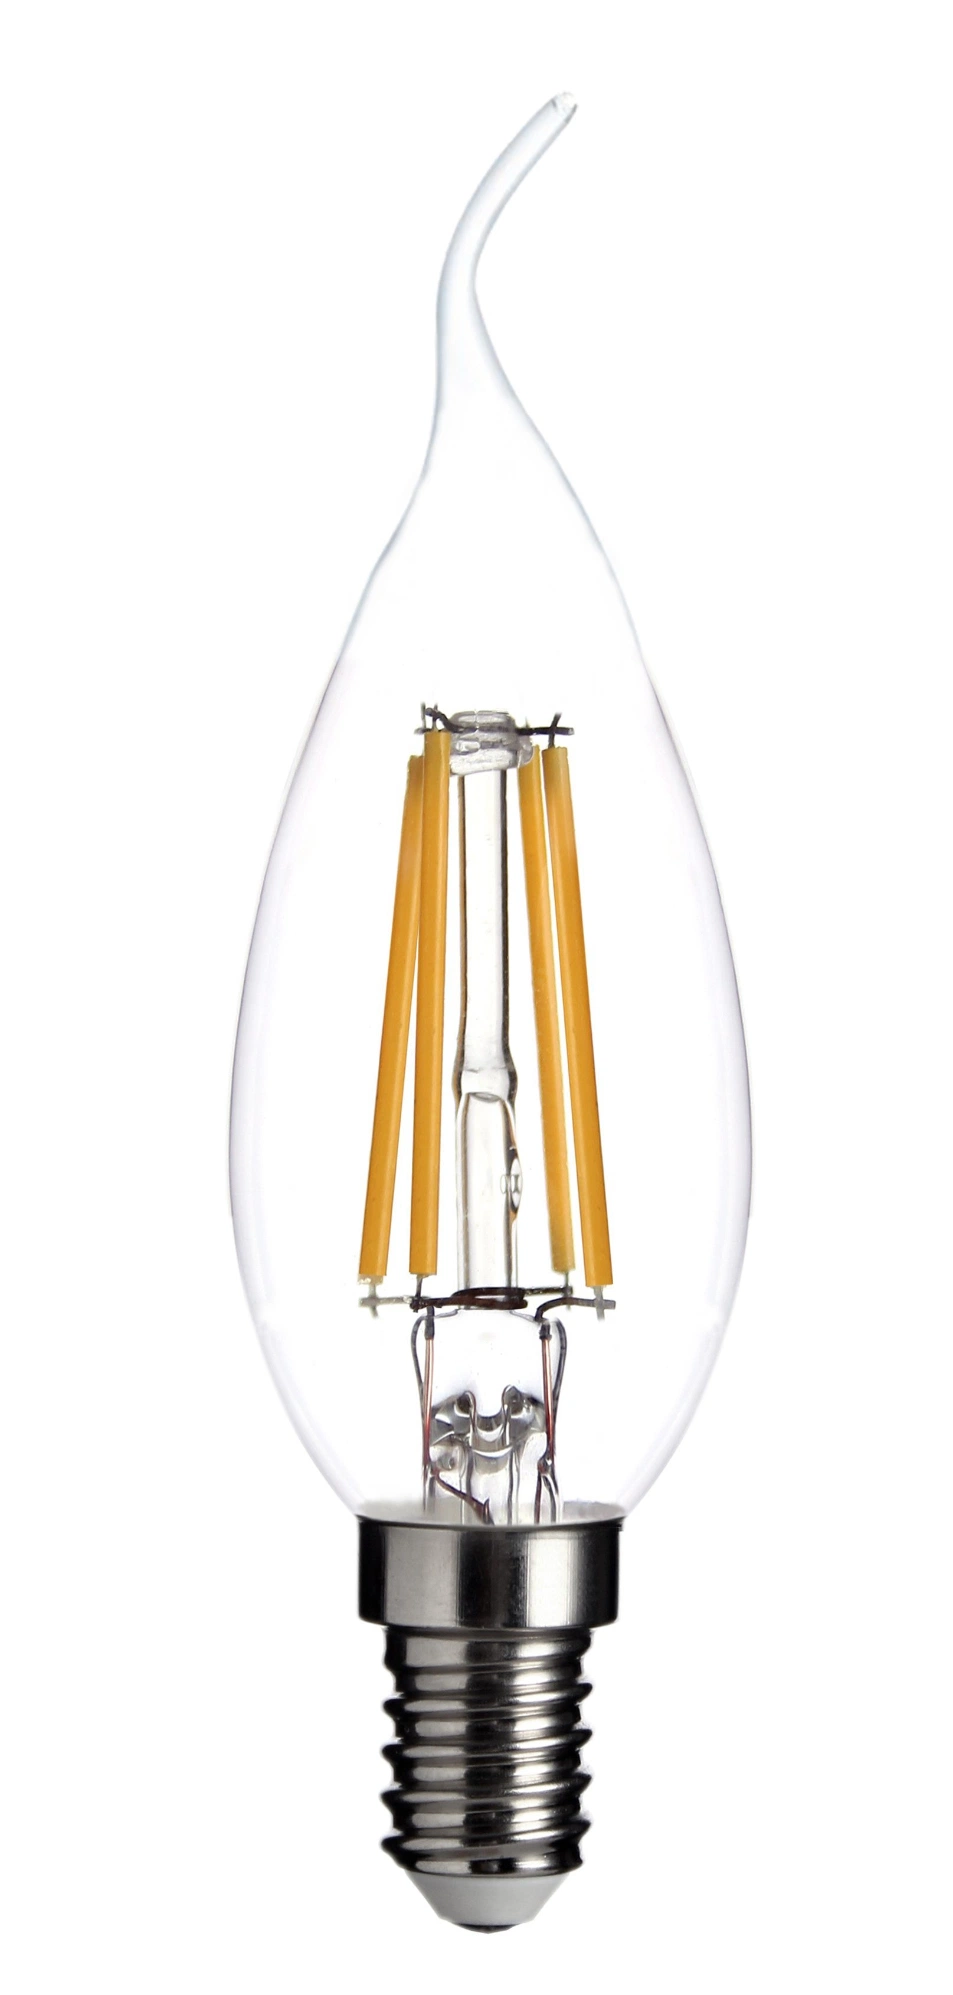 LED Filament Bulb Lamp 7W Glass C35L COB LED Light Candle Lamp Amber Clear Glass Edison Bulb E14 Classic Lamp Decoration Lamp